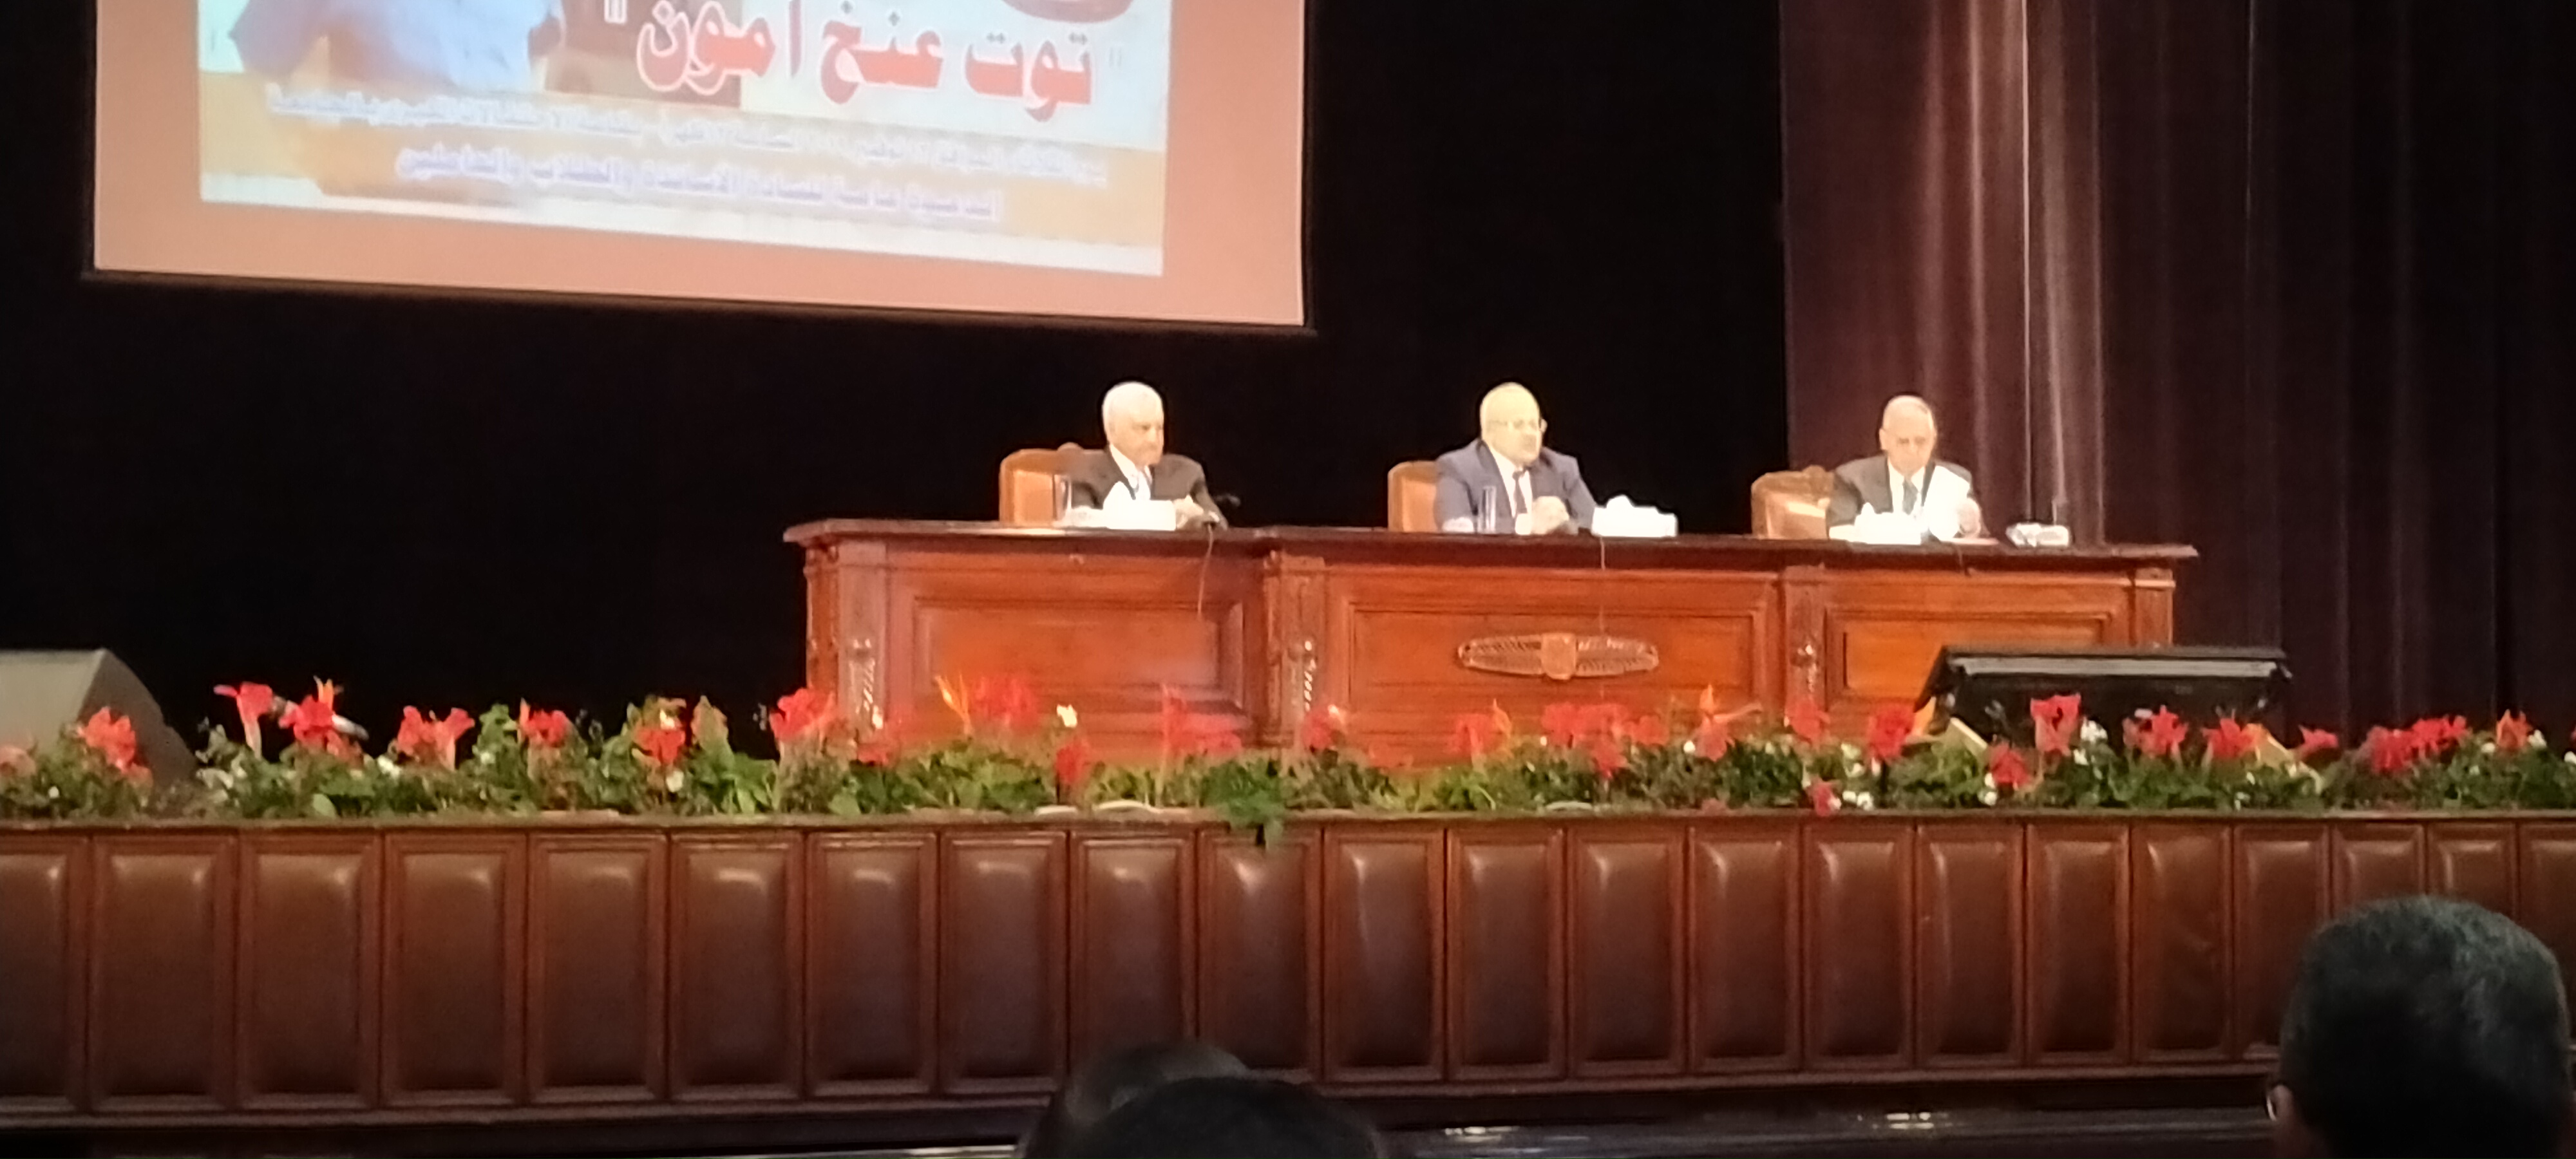 المحاضرة التى تنظمها جامعة القاهرة بحضور الدكتور زاهى حواس  (8)